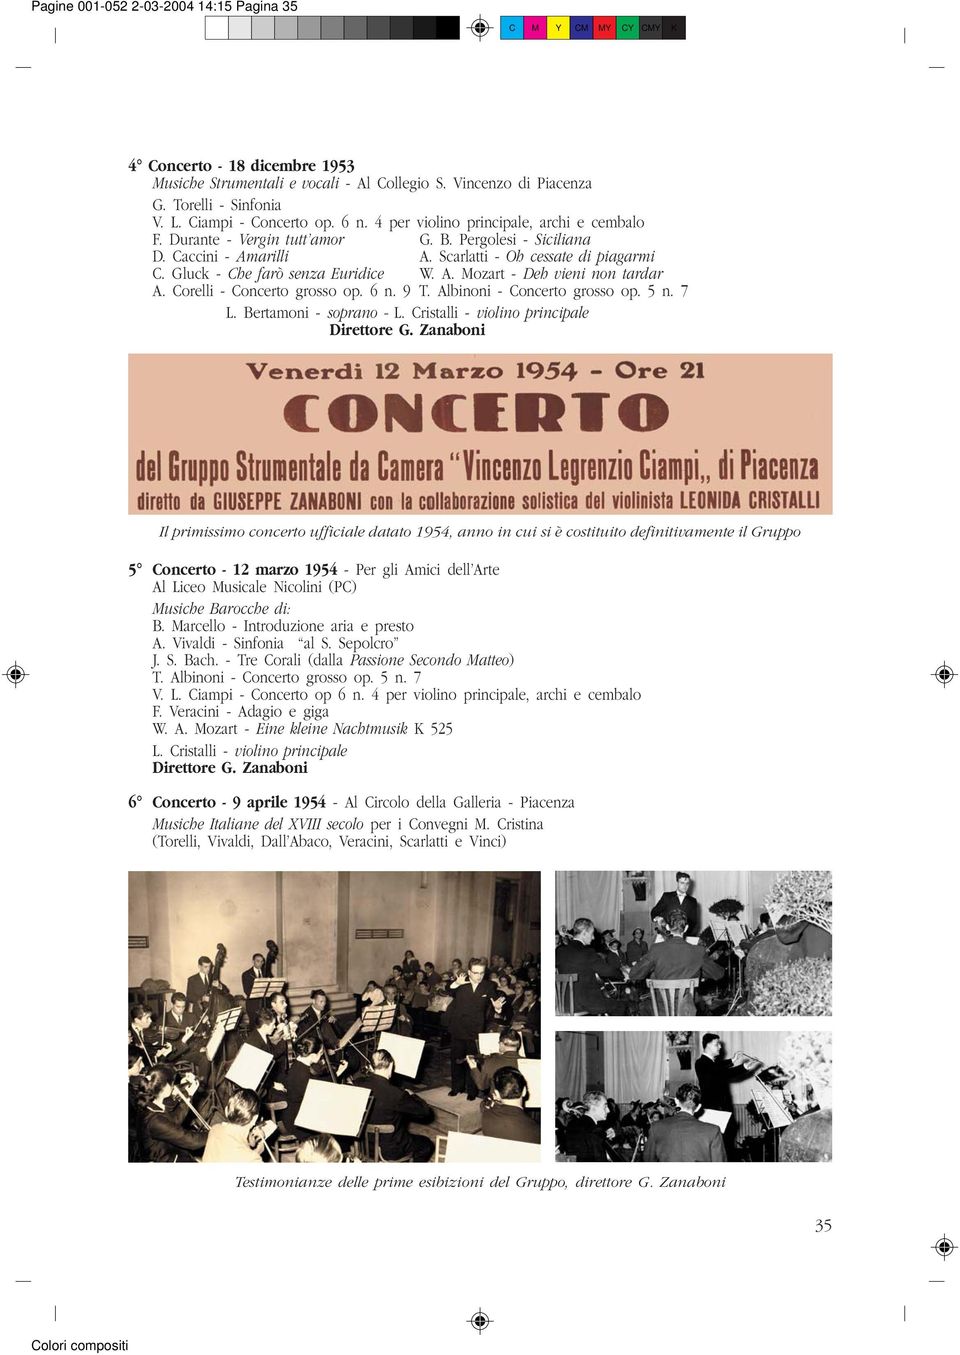 Corelli - Concerto grosso op. 6 n. 9 T. Albinoni - Concerto grosso op. 5 n. 7 L. Bertamoni - soprano - L.